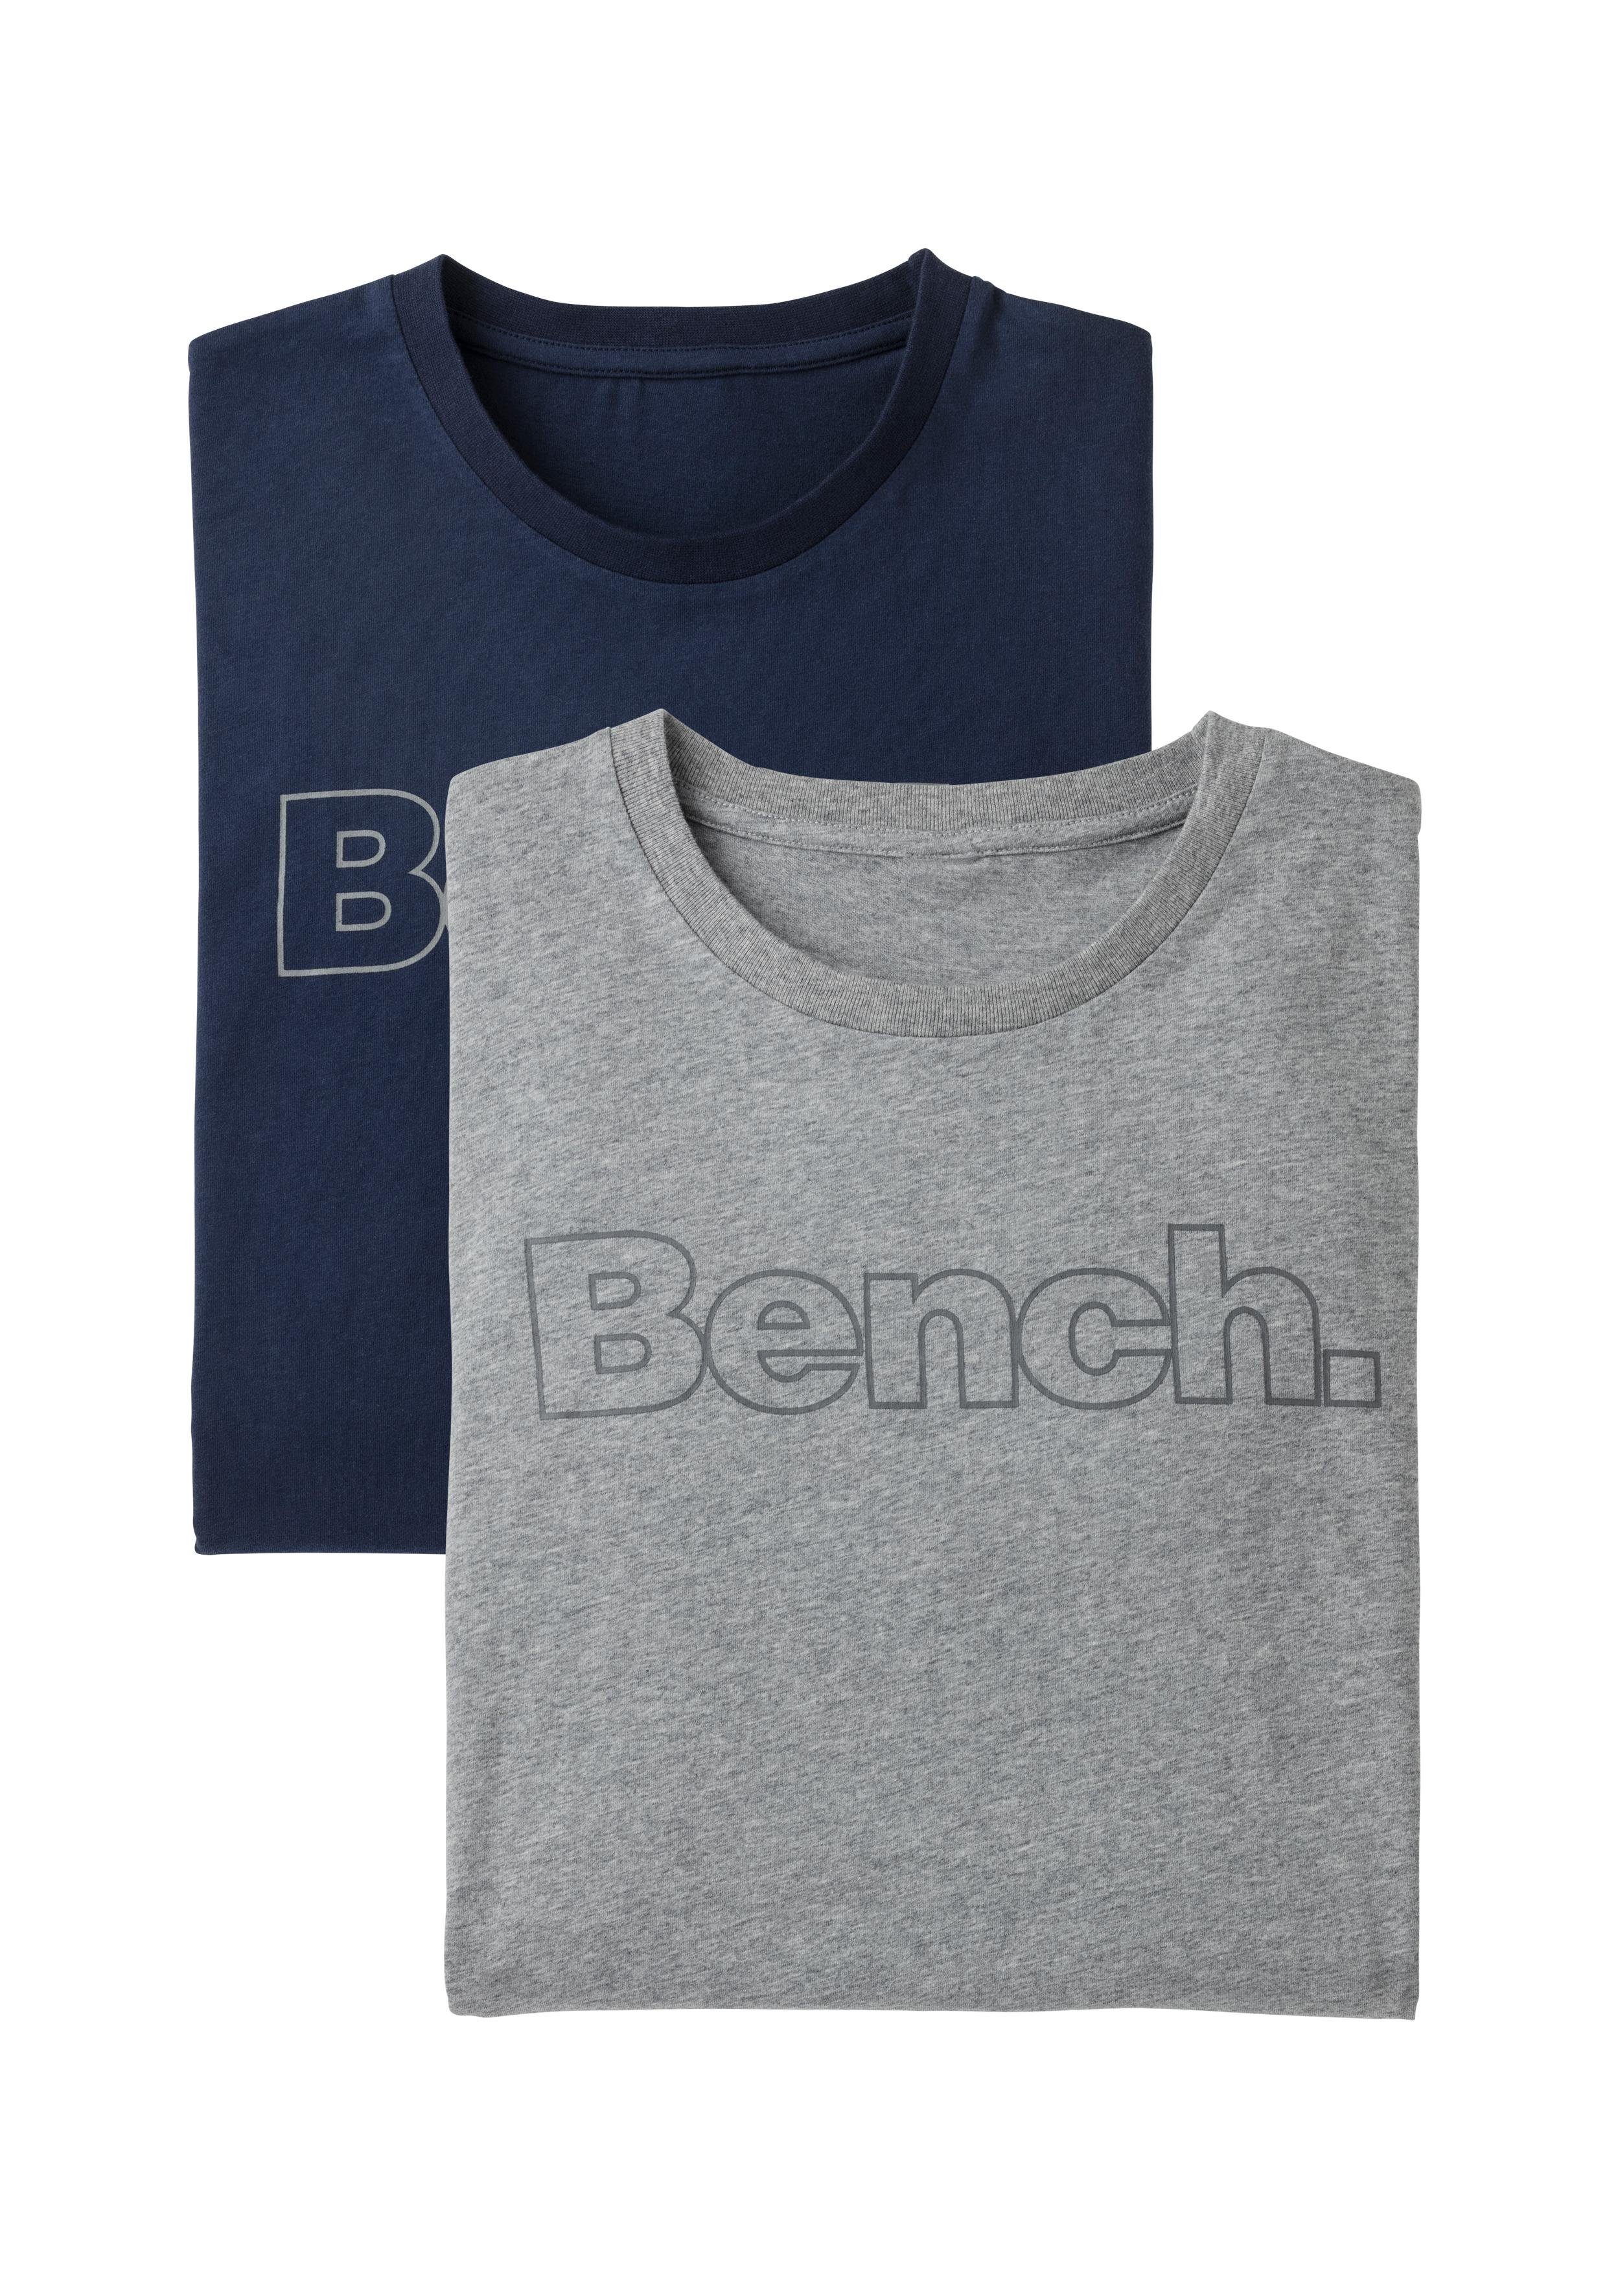 (2-tlg) Bench. Bench. mit vorn navy Print grau-meliert, Loungewear T-Shirt